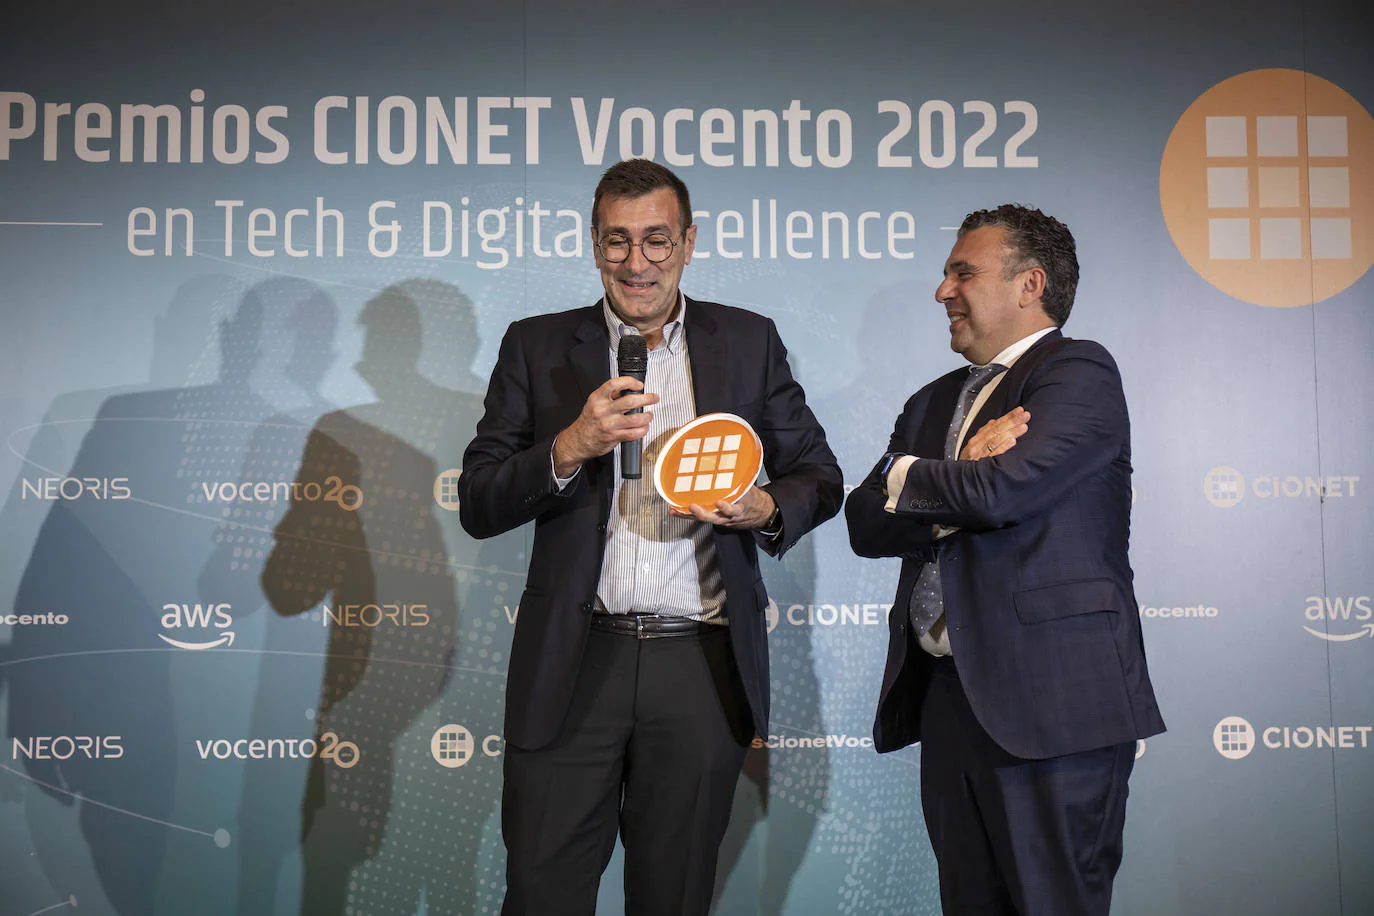 El presidente del Consejo Asesor de CIONET Madrid, Enrique Ávila, recogió el Premio especial a la Mejor Trayectoria Profesional.